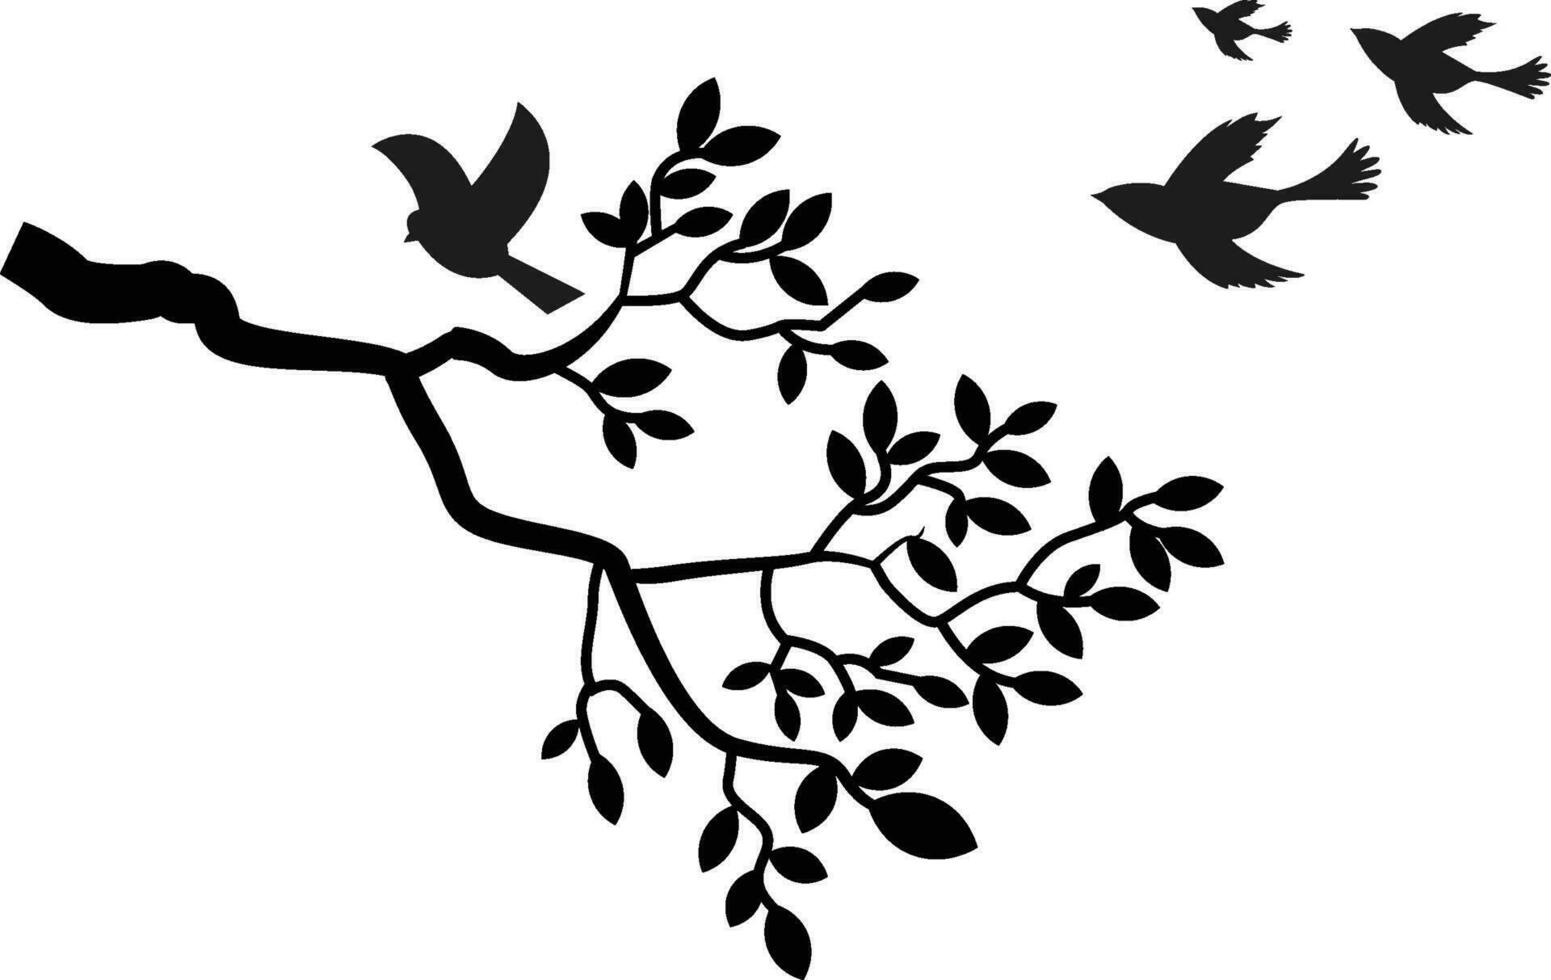 boom Afdeling met bladeren, vogelstand neergestreken en vliegend met zwart en wit silhouet - muur stickers vector